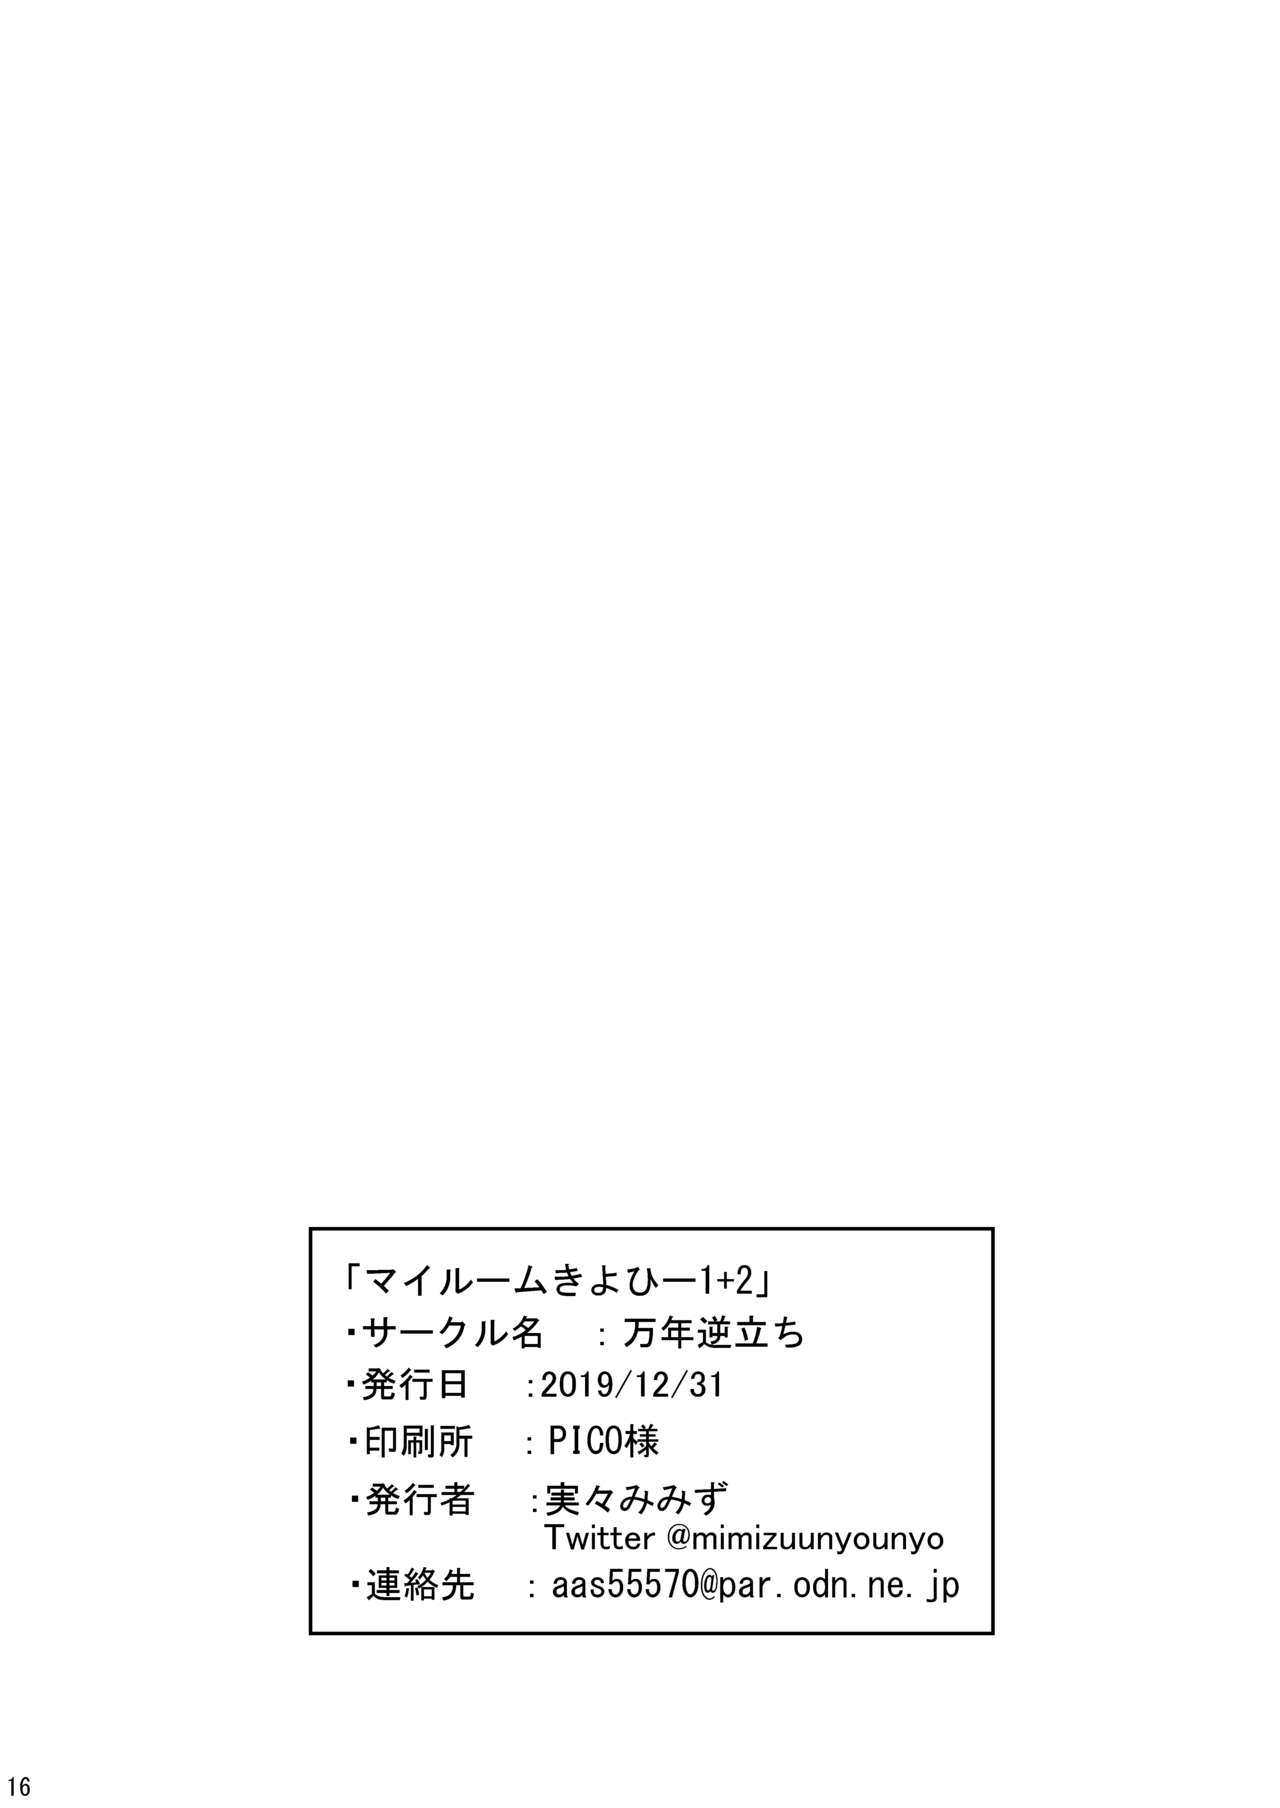 [万年逆立ち (実々みみず)] マイルームきよひー1+2 (Fate/Grand Order) [DL版]